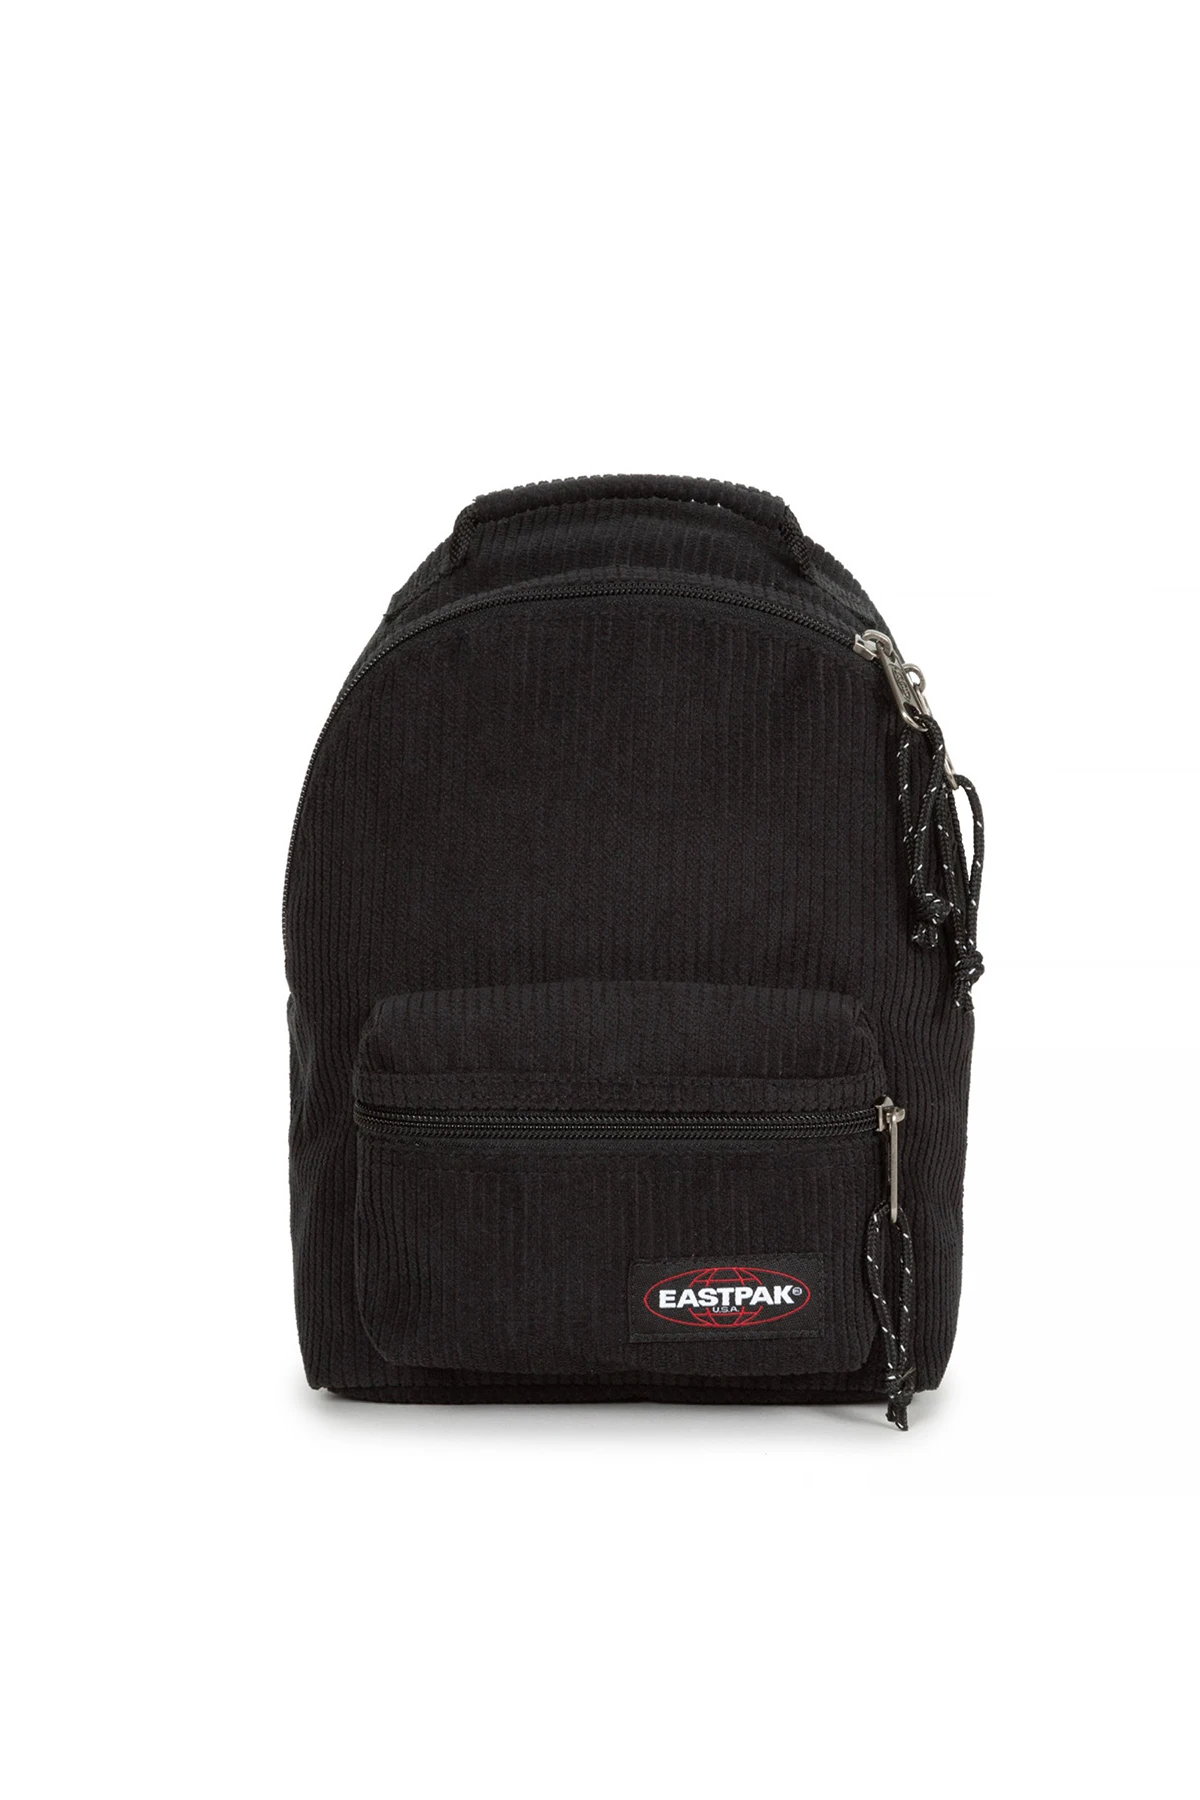 Eastpak Orbit W Backpack Bag BACKPACK EK00071EG691